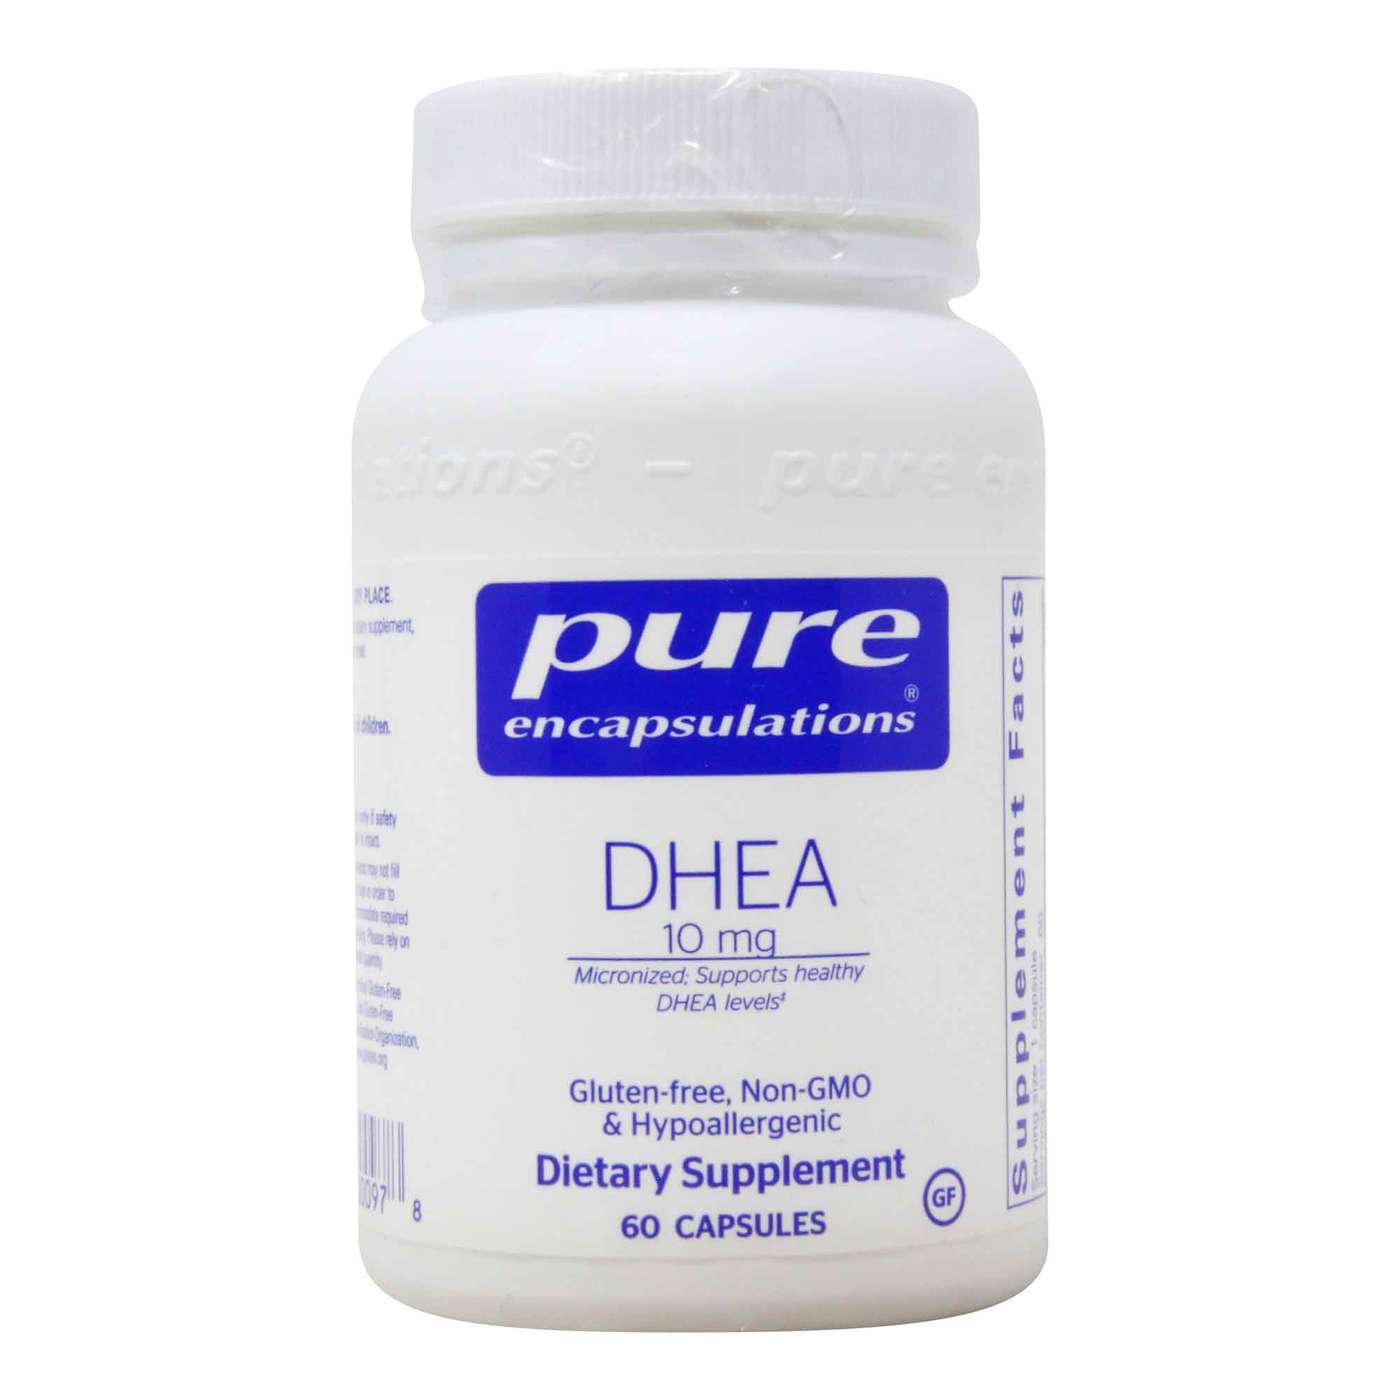 Pure Encapsulations DHEA - 10 mg - 60 Capsules - eVitamins.com.